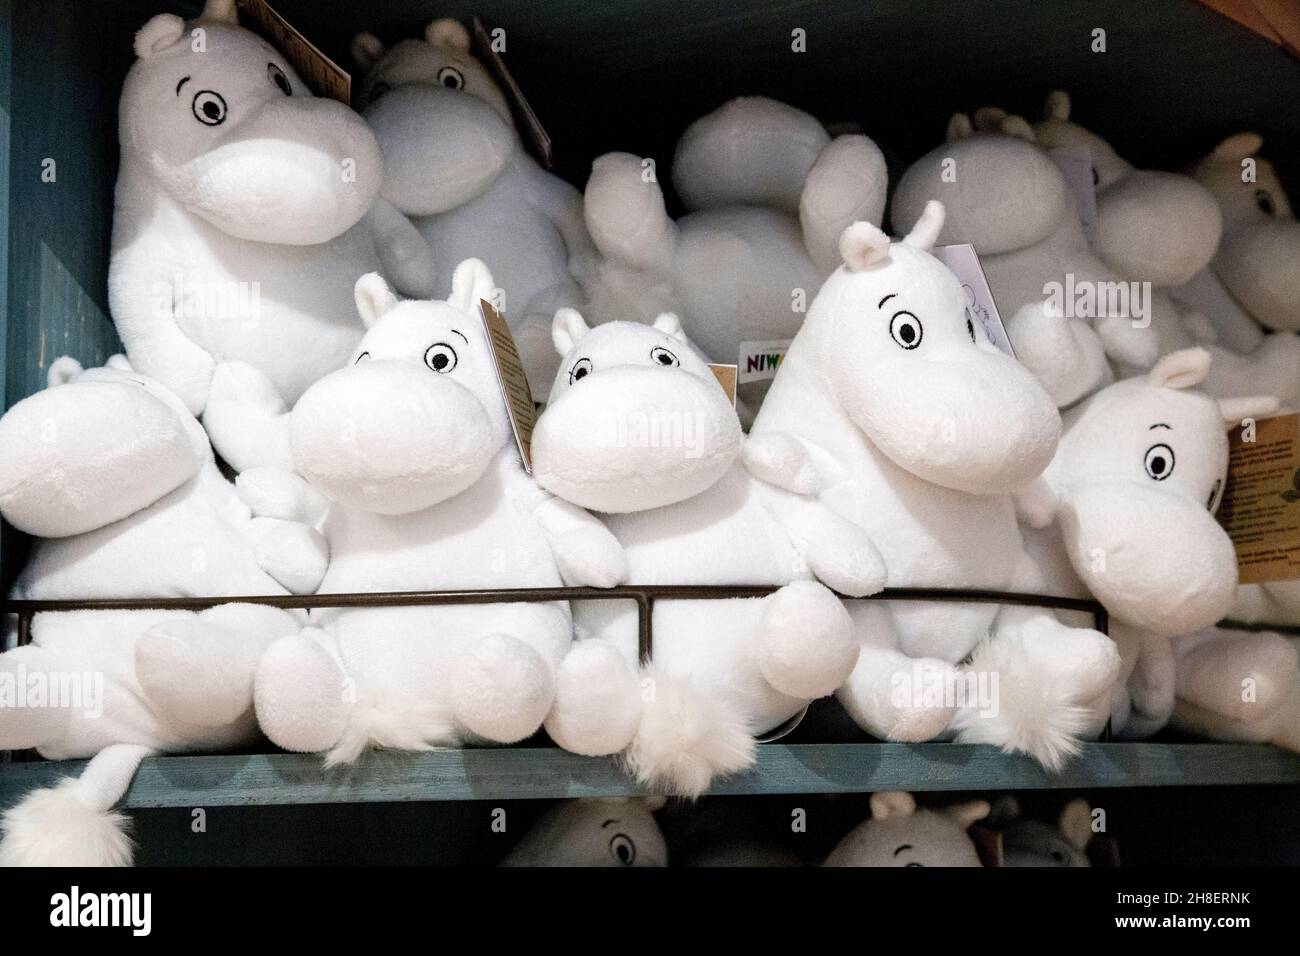 Jouets en peluche moomin au magasin Moomin de Covent Garden Market, Londres, Royaume-Uni Banque D'Images